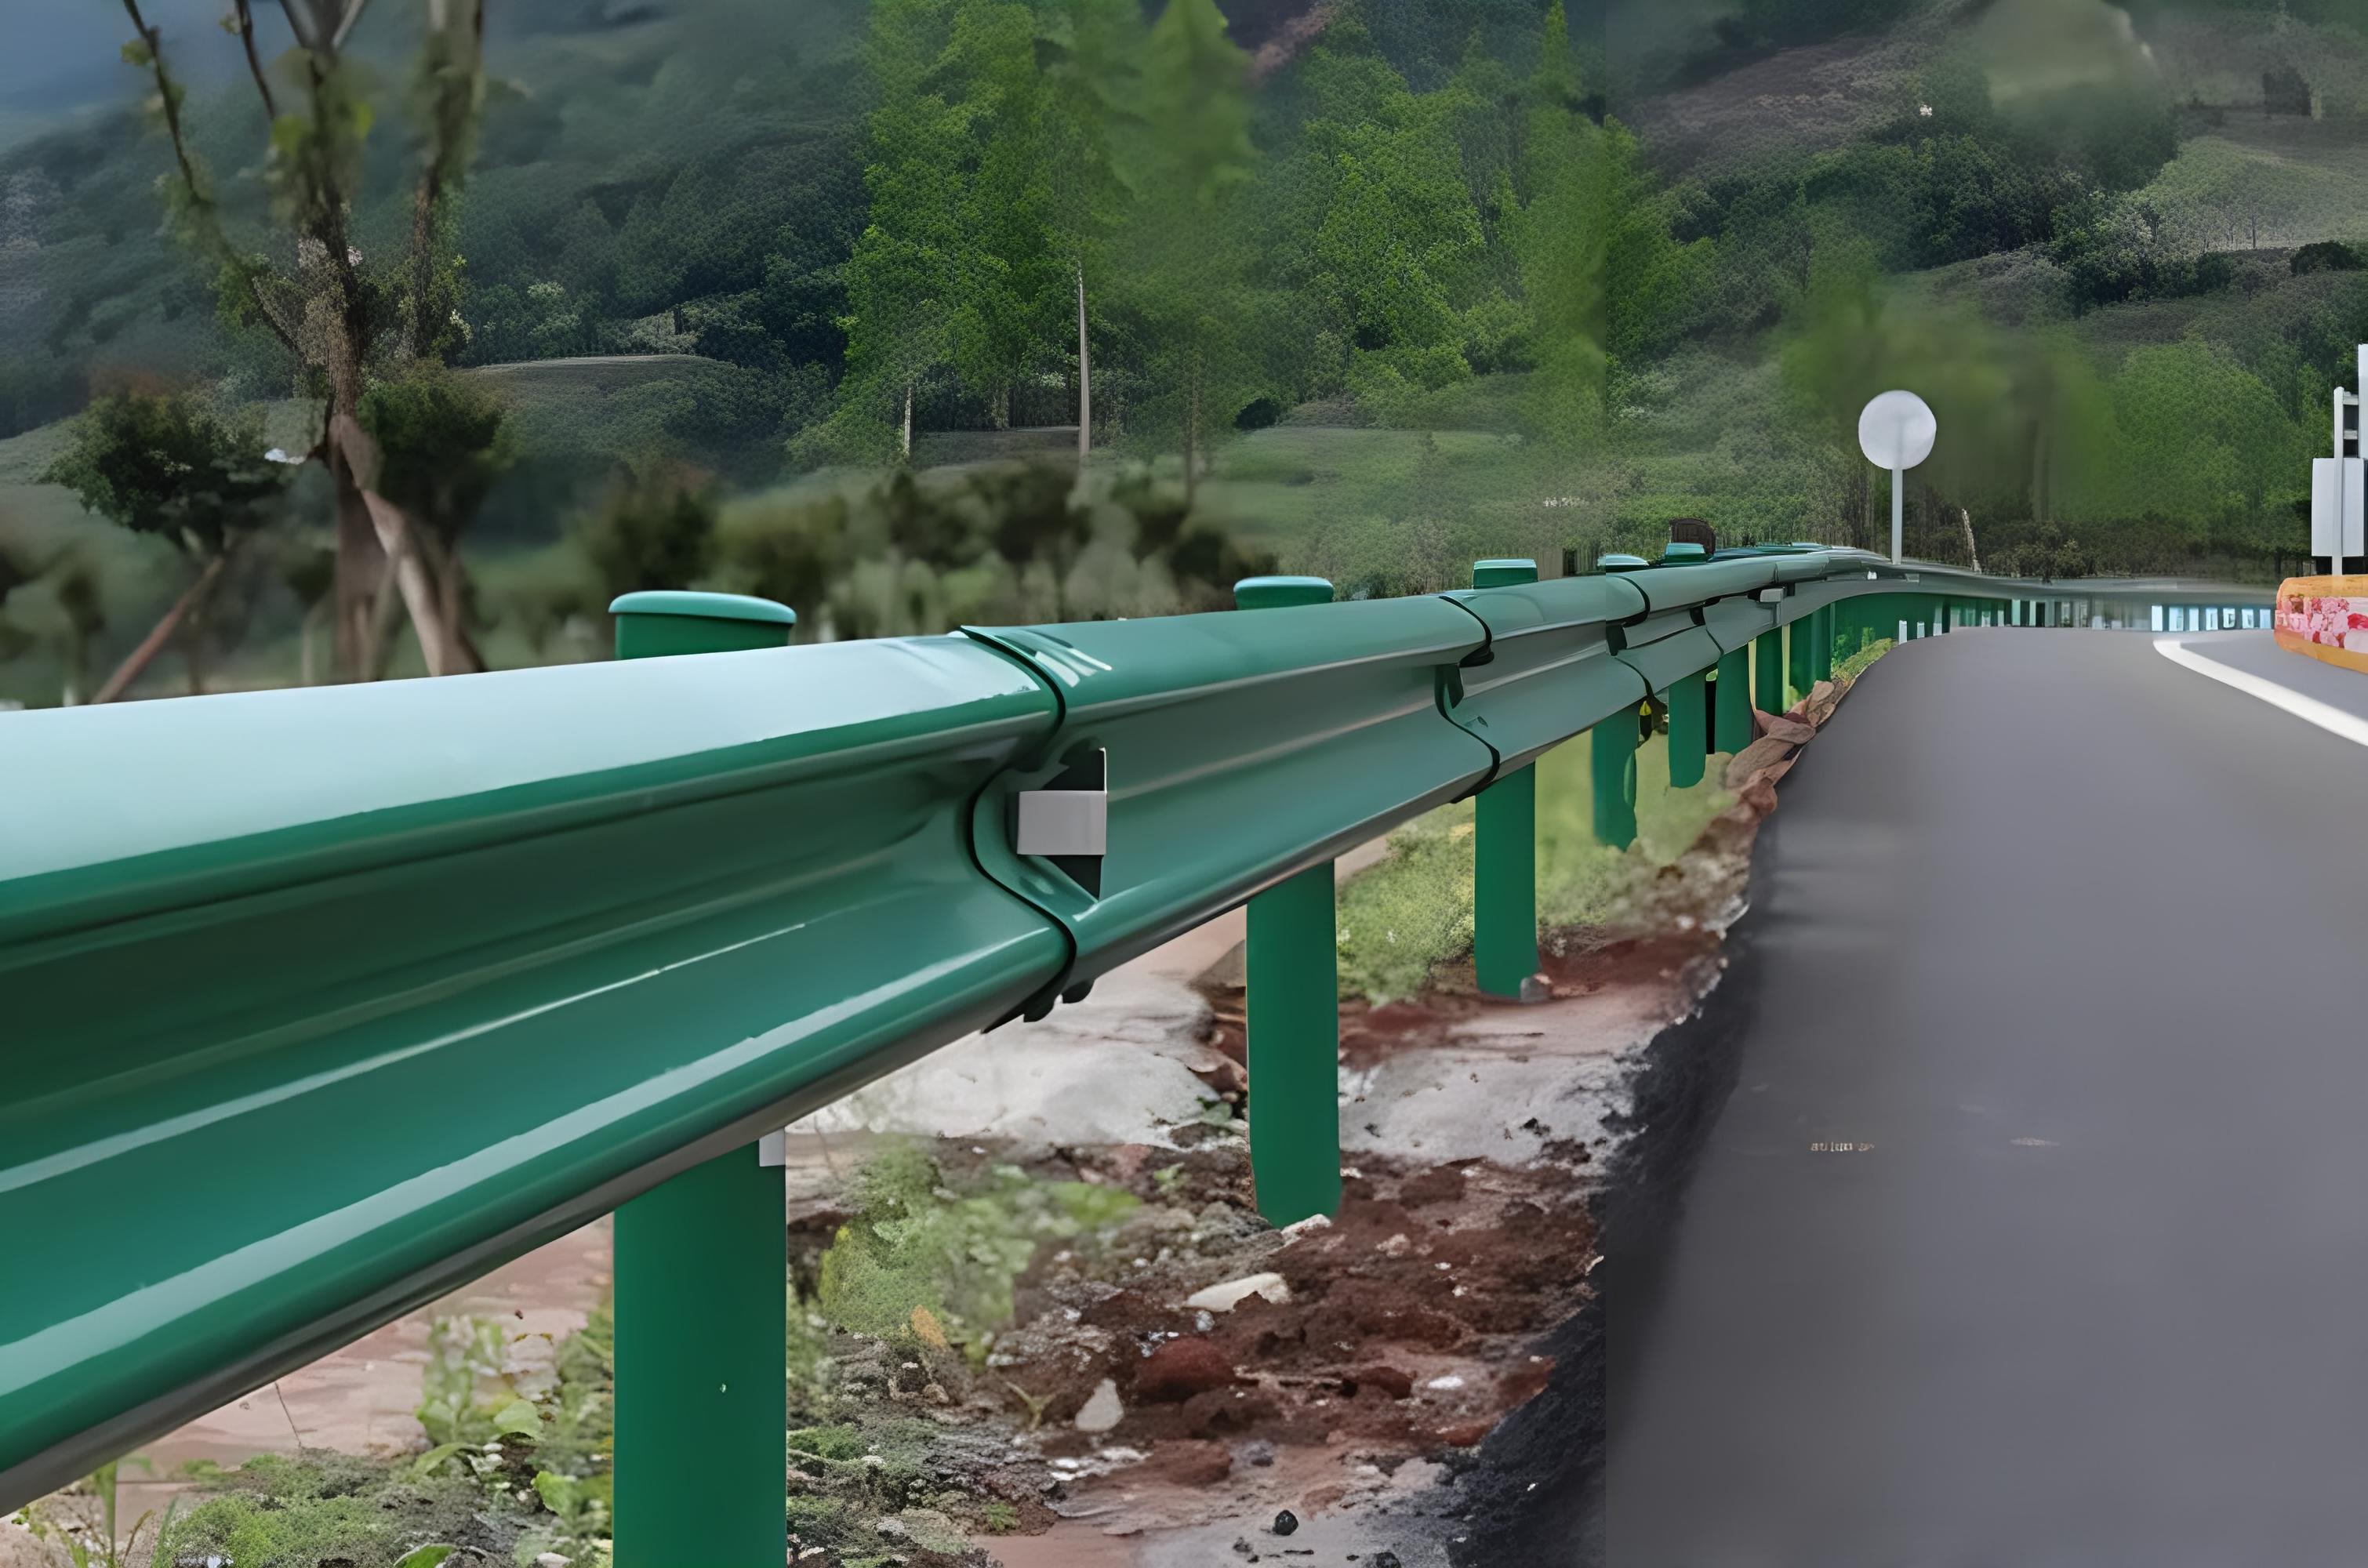 四川波形护栏保护道路安全的重要设施